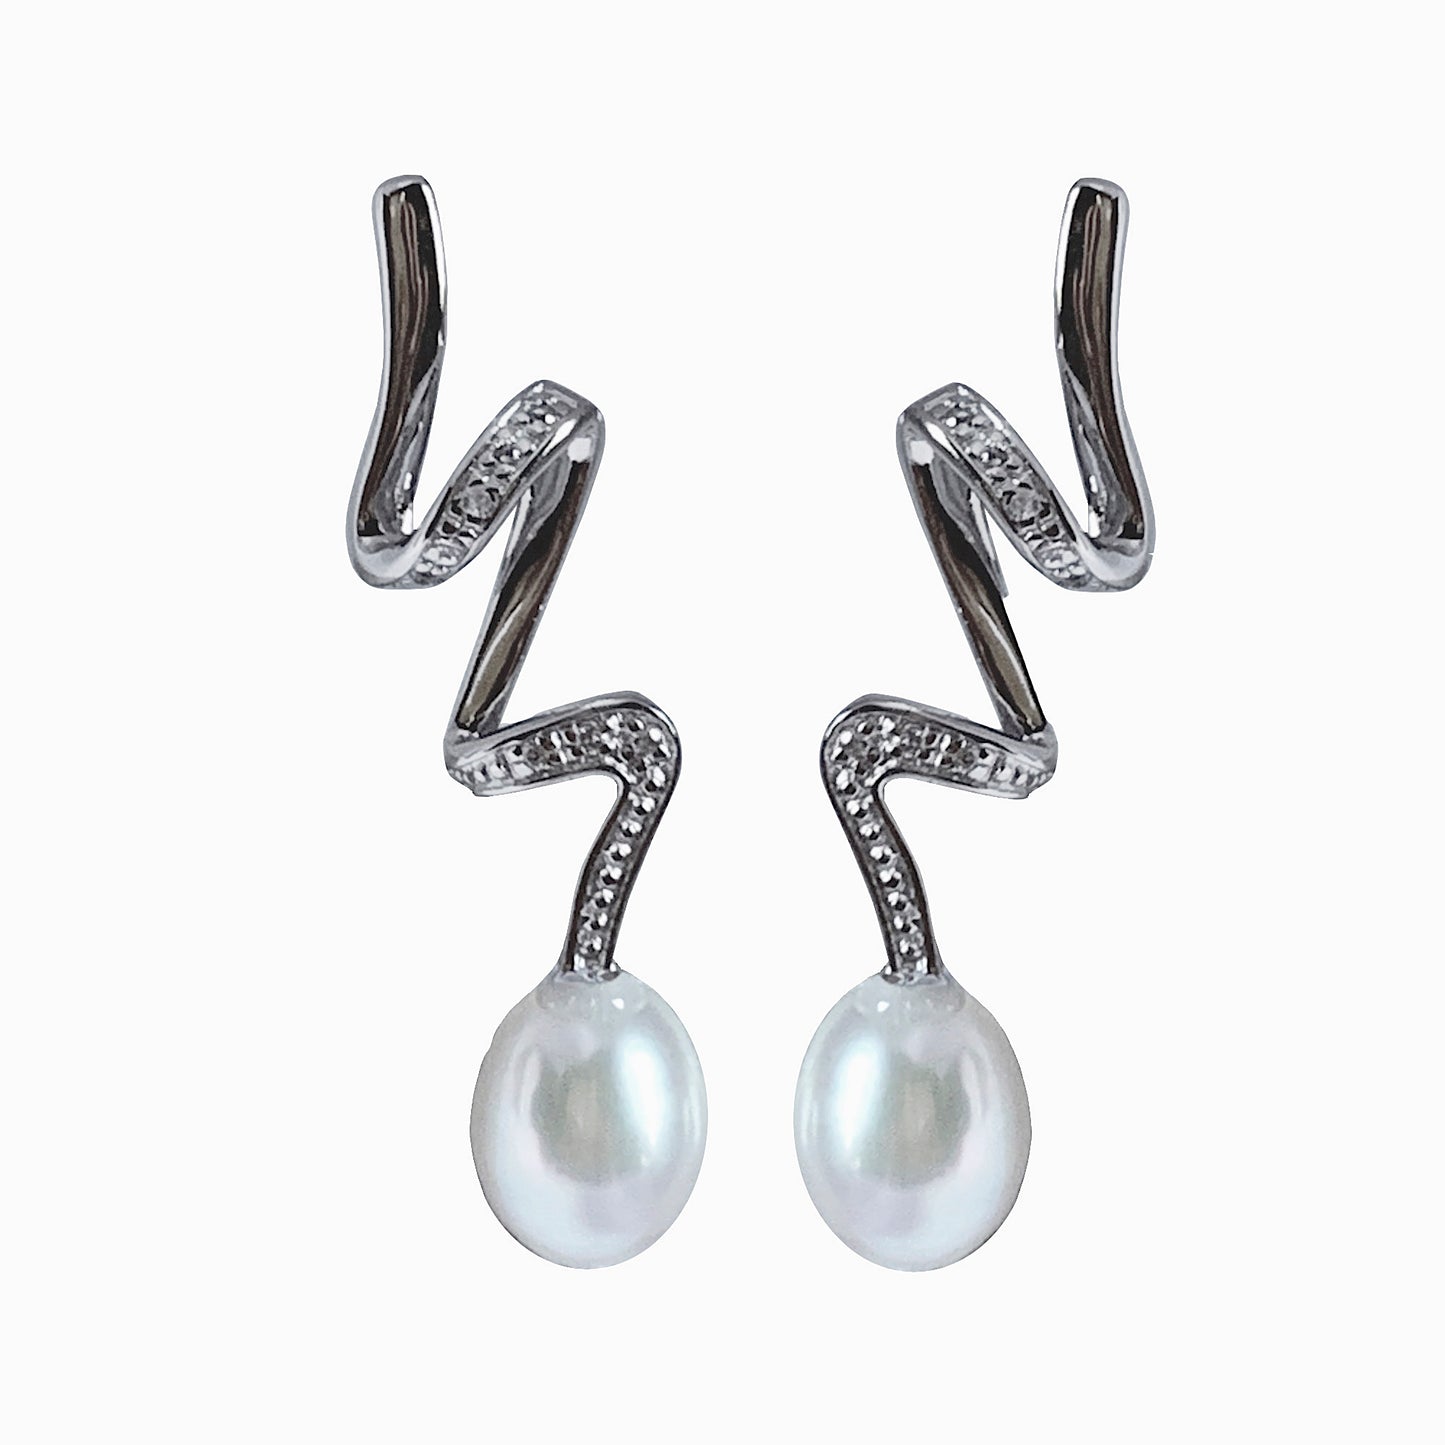 earring, earrings, pendiente, pendientes, brass, laton, circonitas, circonita, zirconia, rhodium, rodio, fresh water pearls, pearl, pearls, perla, perlas, perlas cultivadas, perla cultivada